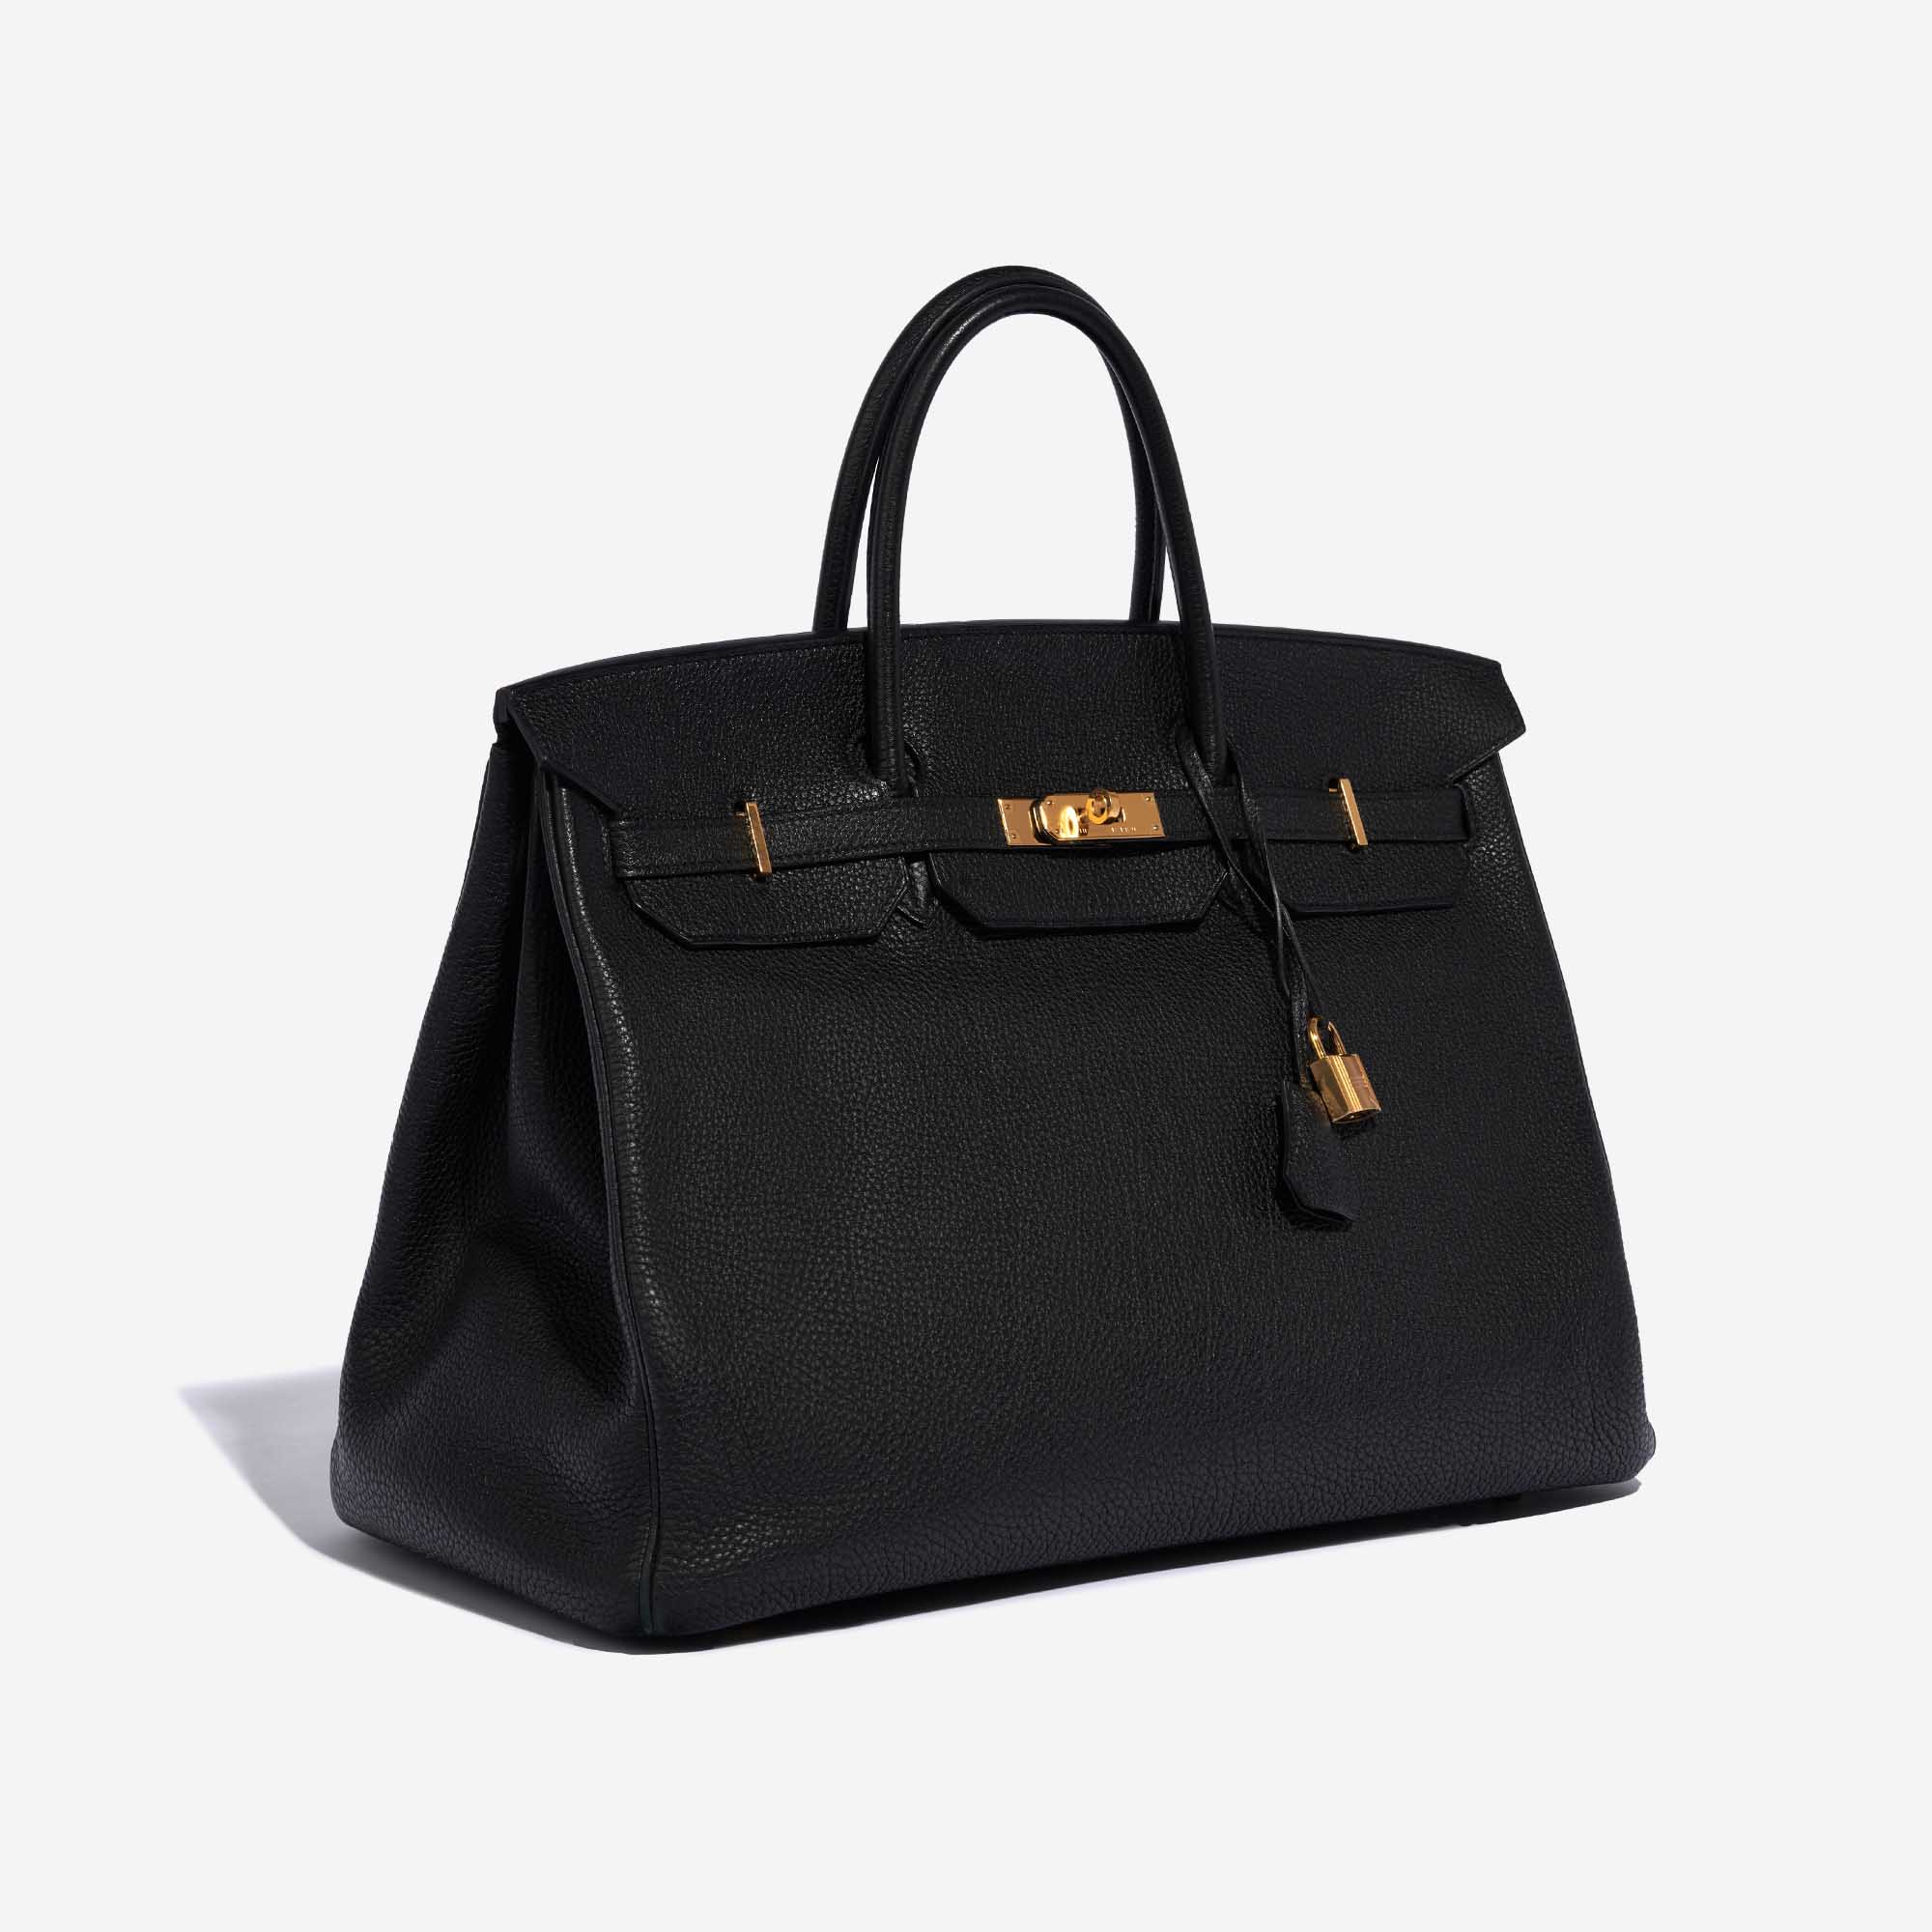 Sac d'occasion Hermès Birkin 40 Togo Noir Noir Côté Face | Vendez votre sac de créateur sur Saclab.com